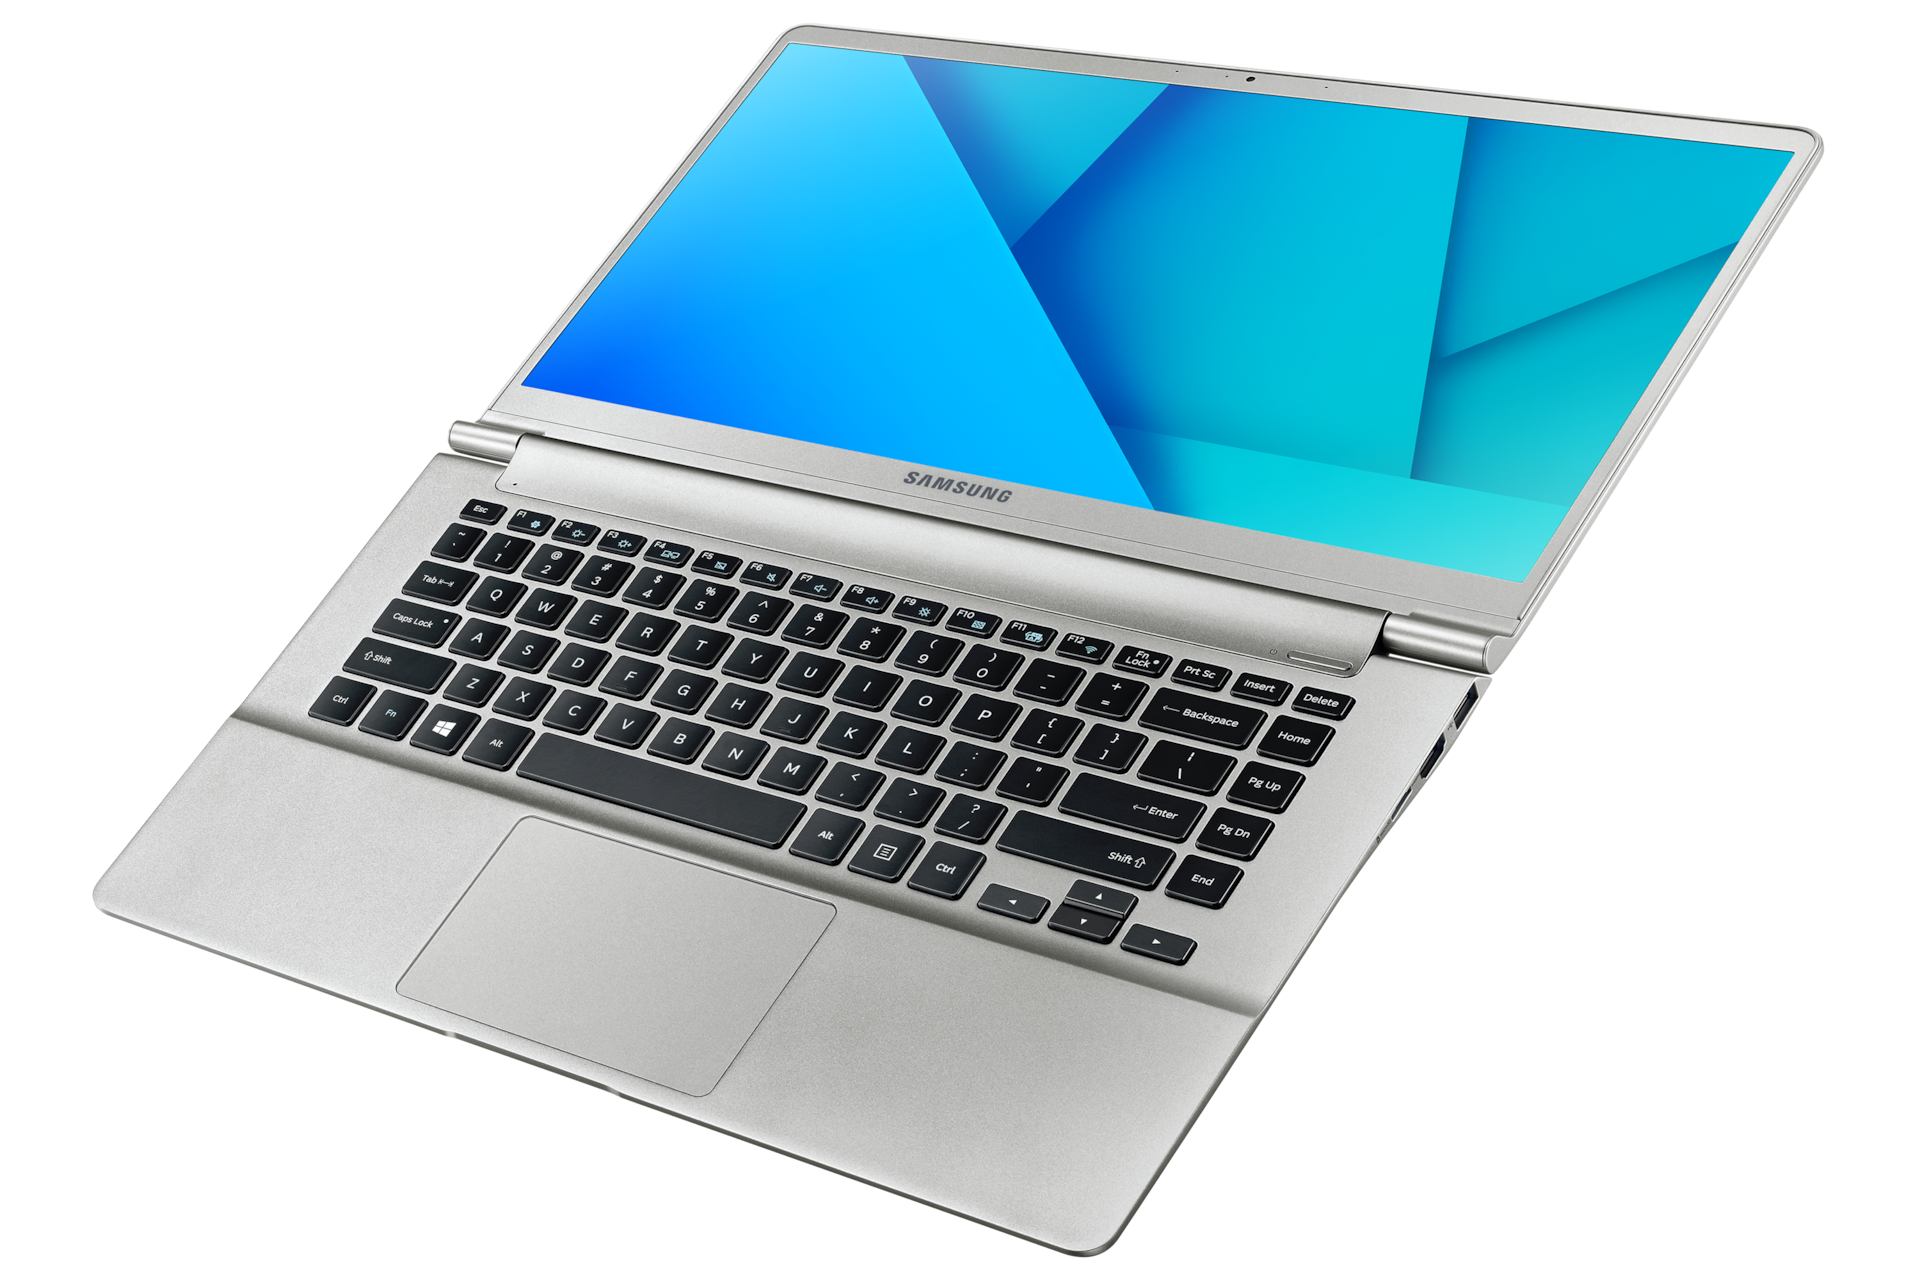 노트북 9 metal (38.1 cm) 
NT900X5J-K582B 
Core™ i5 / 256 GB SSD